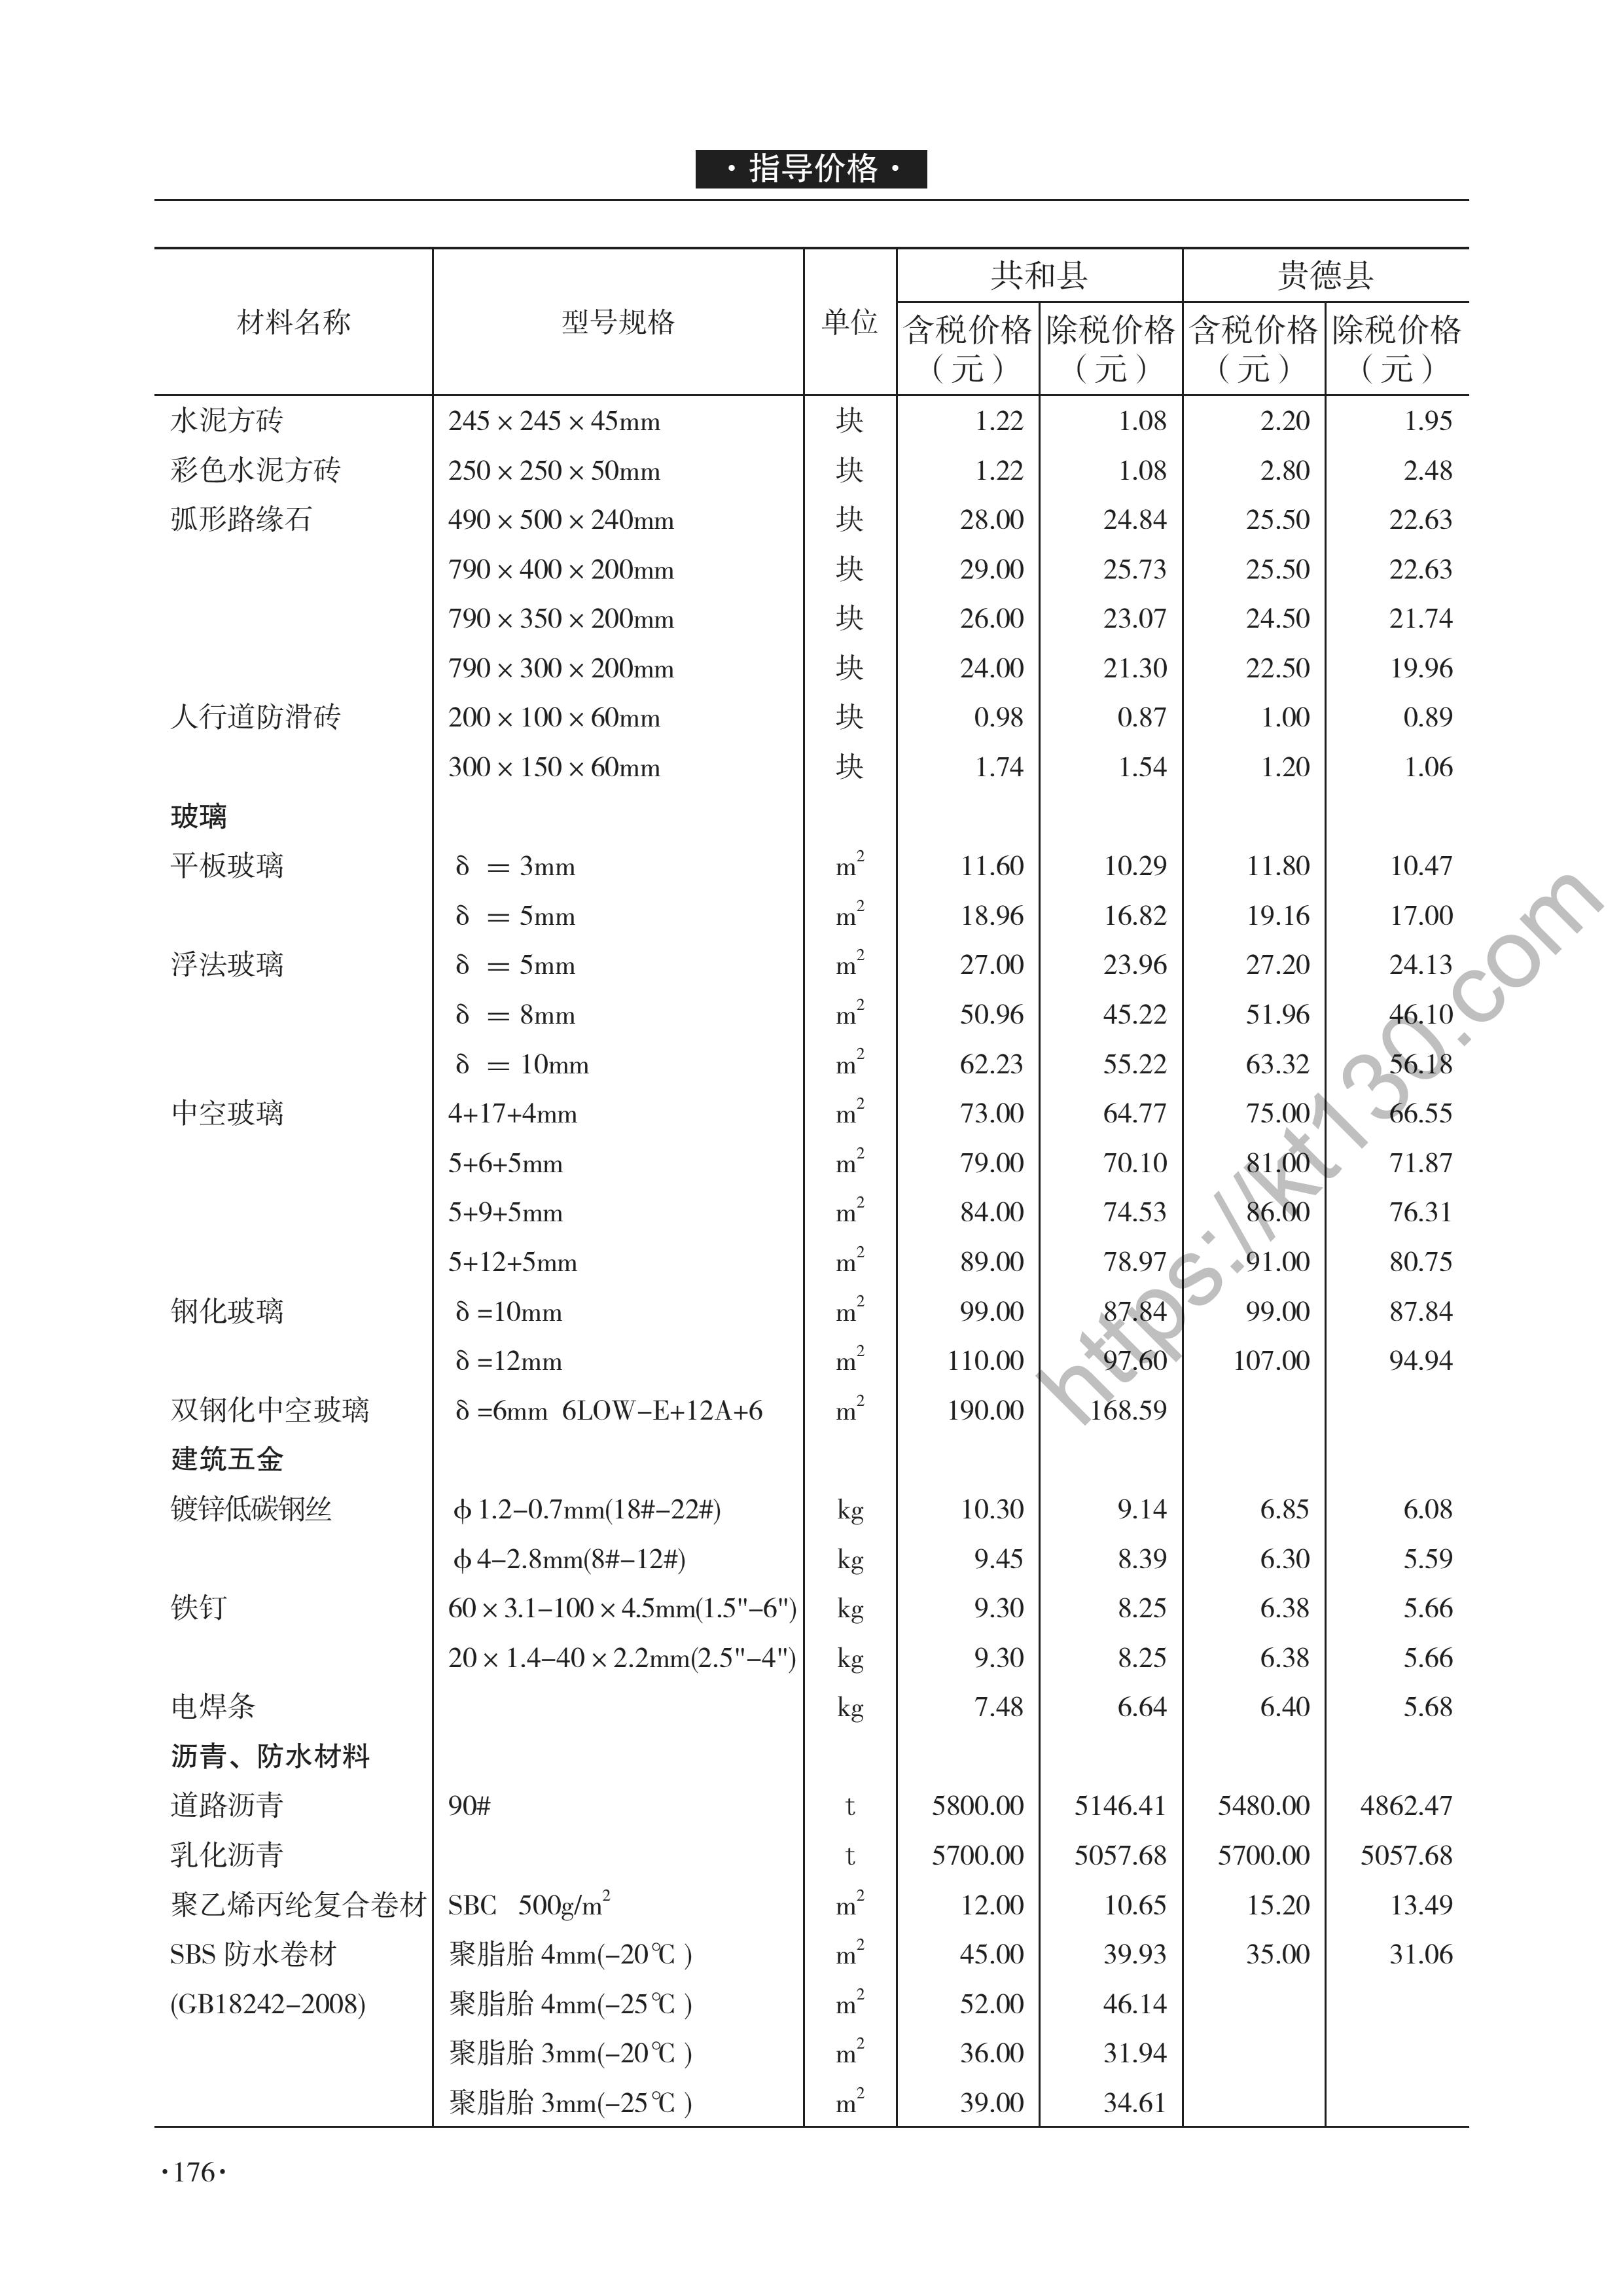 青海省2022年1-2月建筑材料价_中空玻璃_46620